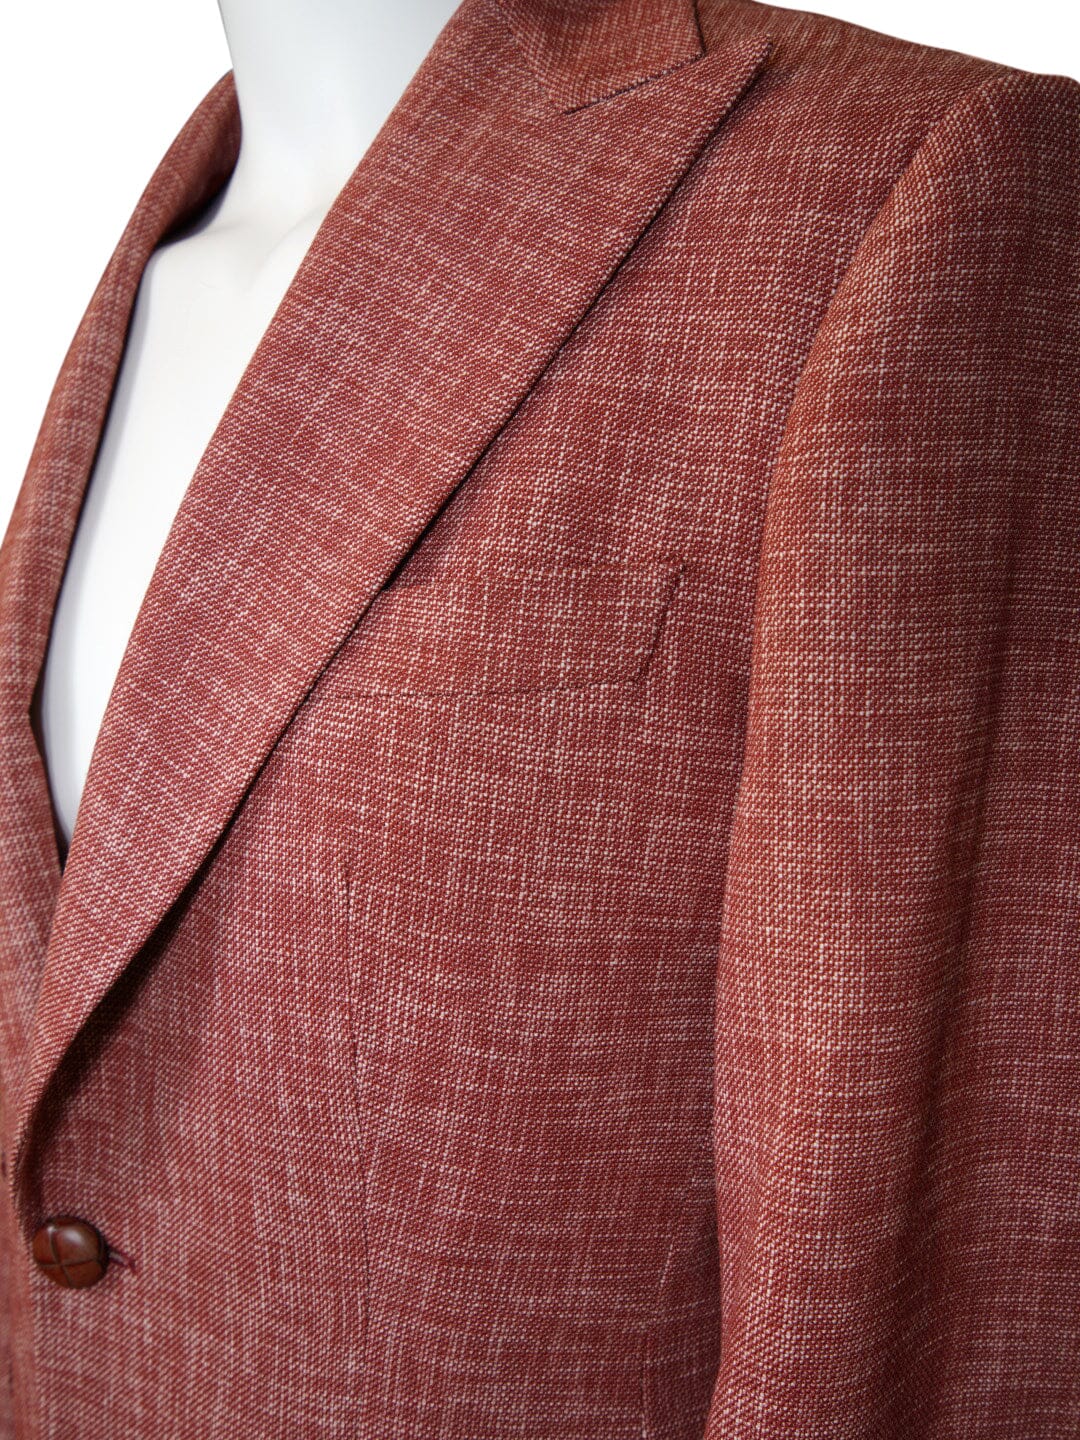 Currant Lino Tweed Jacket